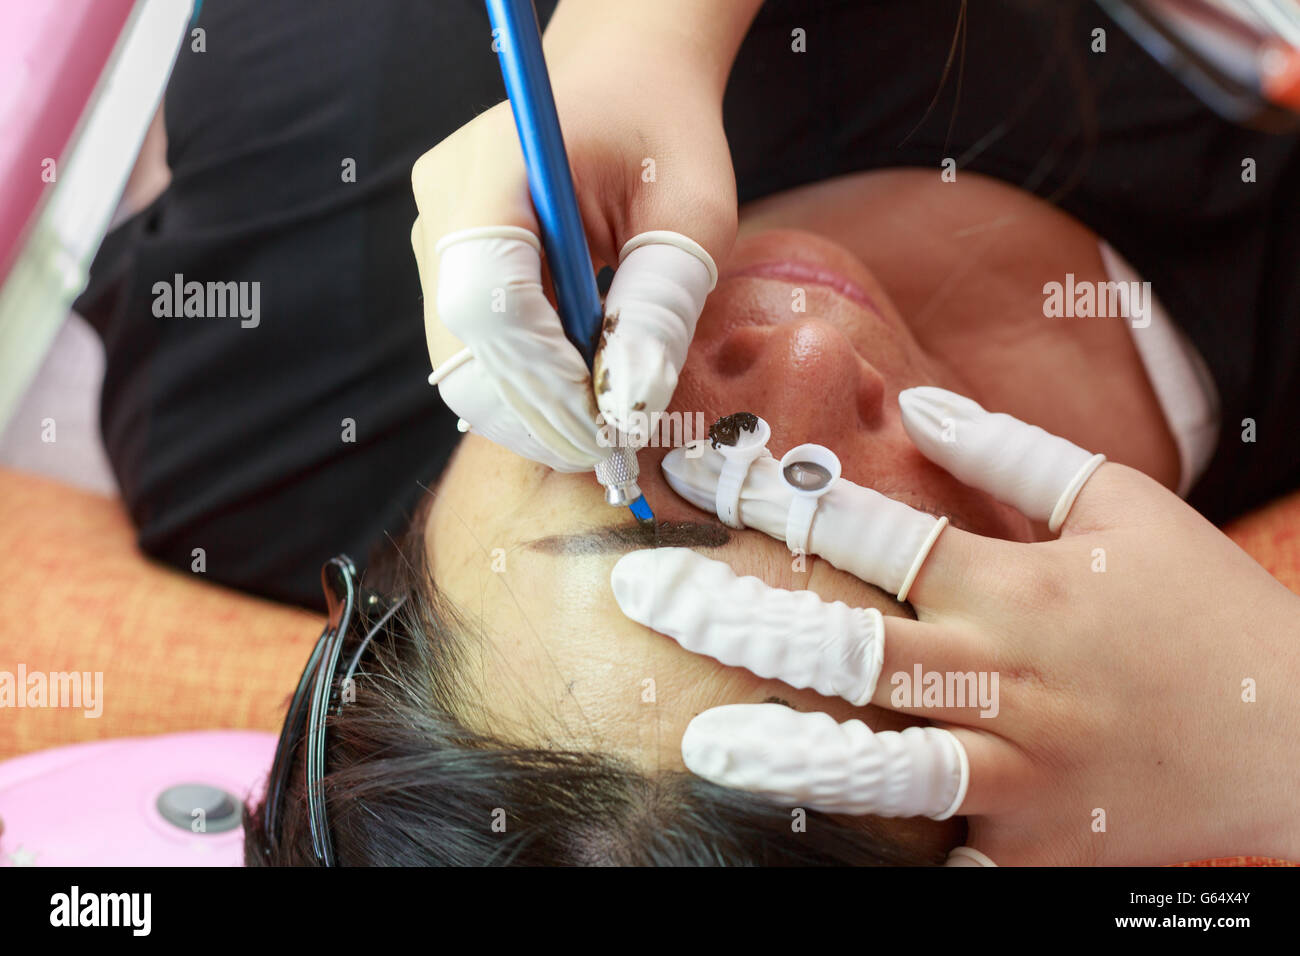 Augenbrauen tätowieren, tut eine Mädchen eine Tätowierung Augenbraue an einem Kunden. Stockfoto